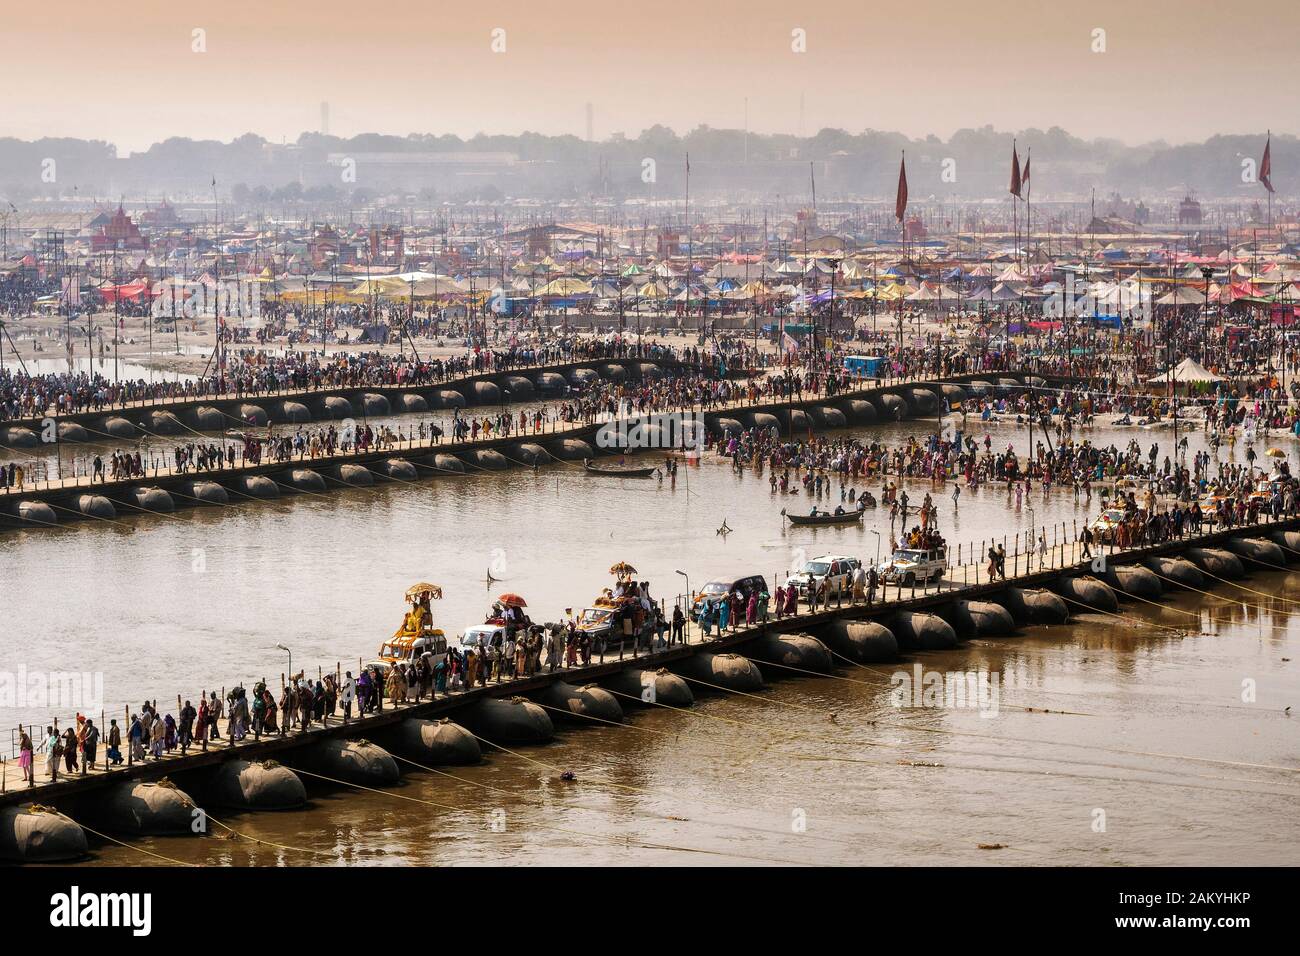 Kumbh Mela festival à Alahabad, Uttar Pradesh, Inde, croise des ponts pontons sur la rivière Ganges. Banque D'Images